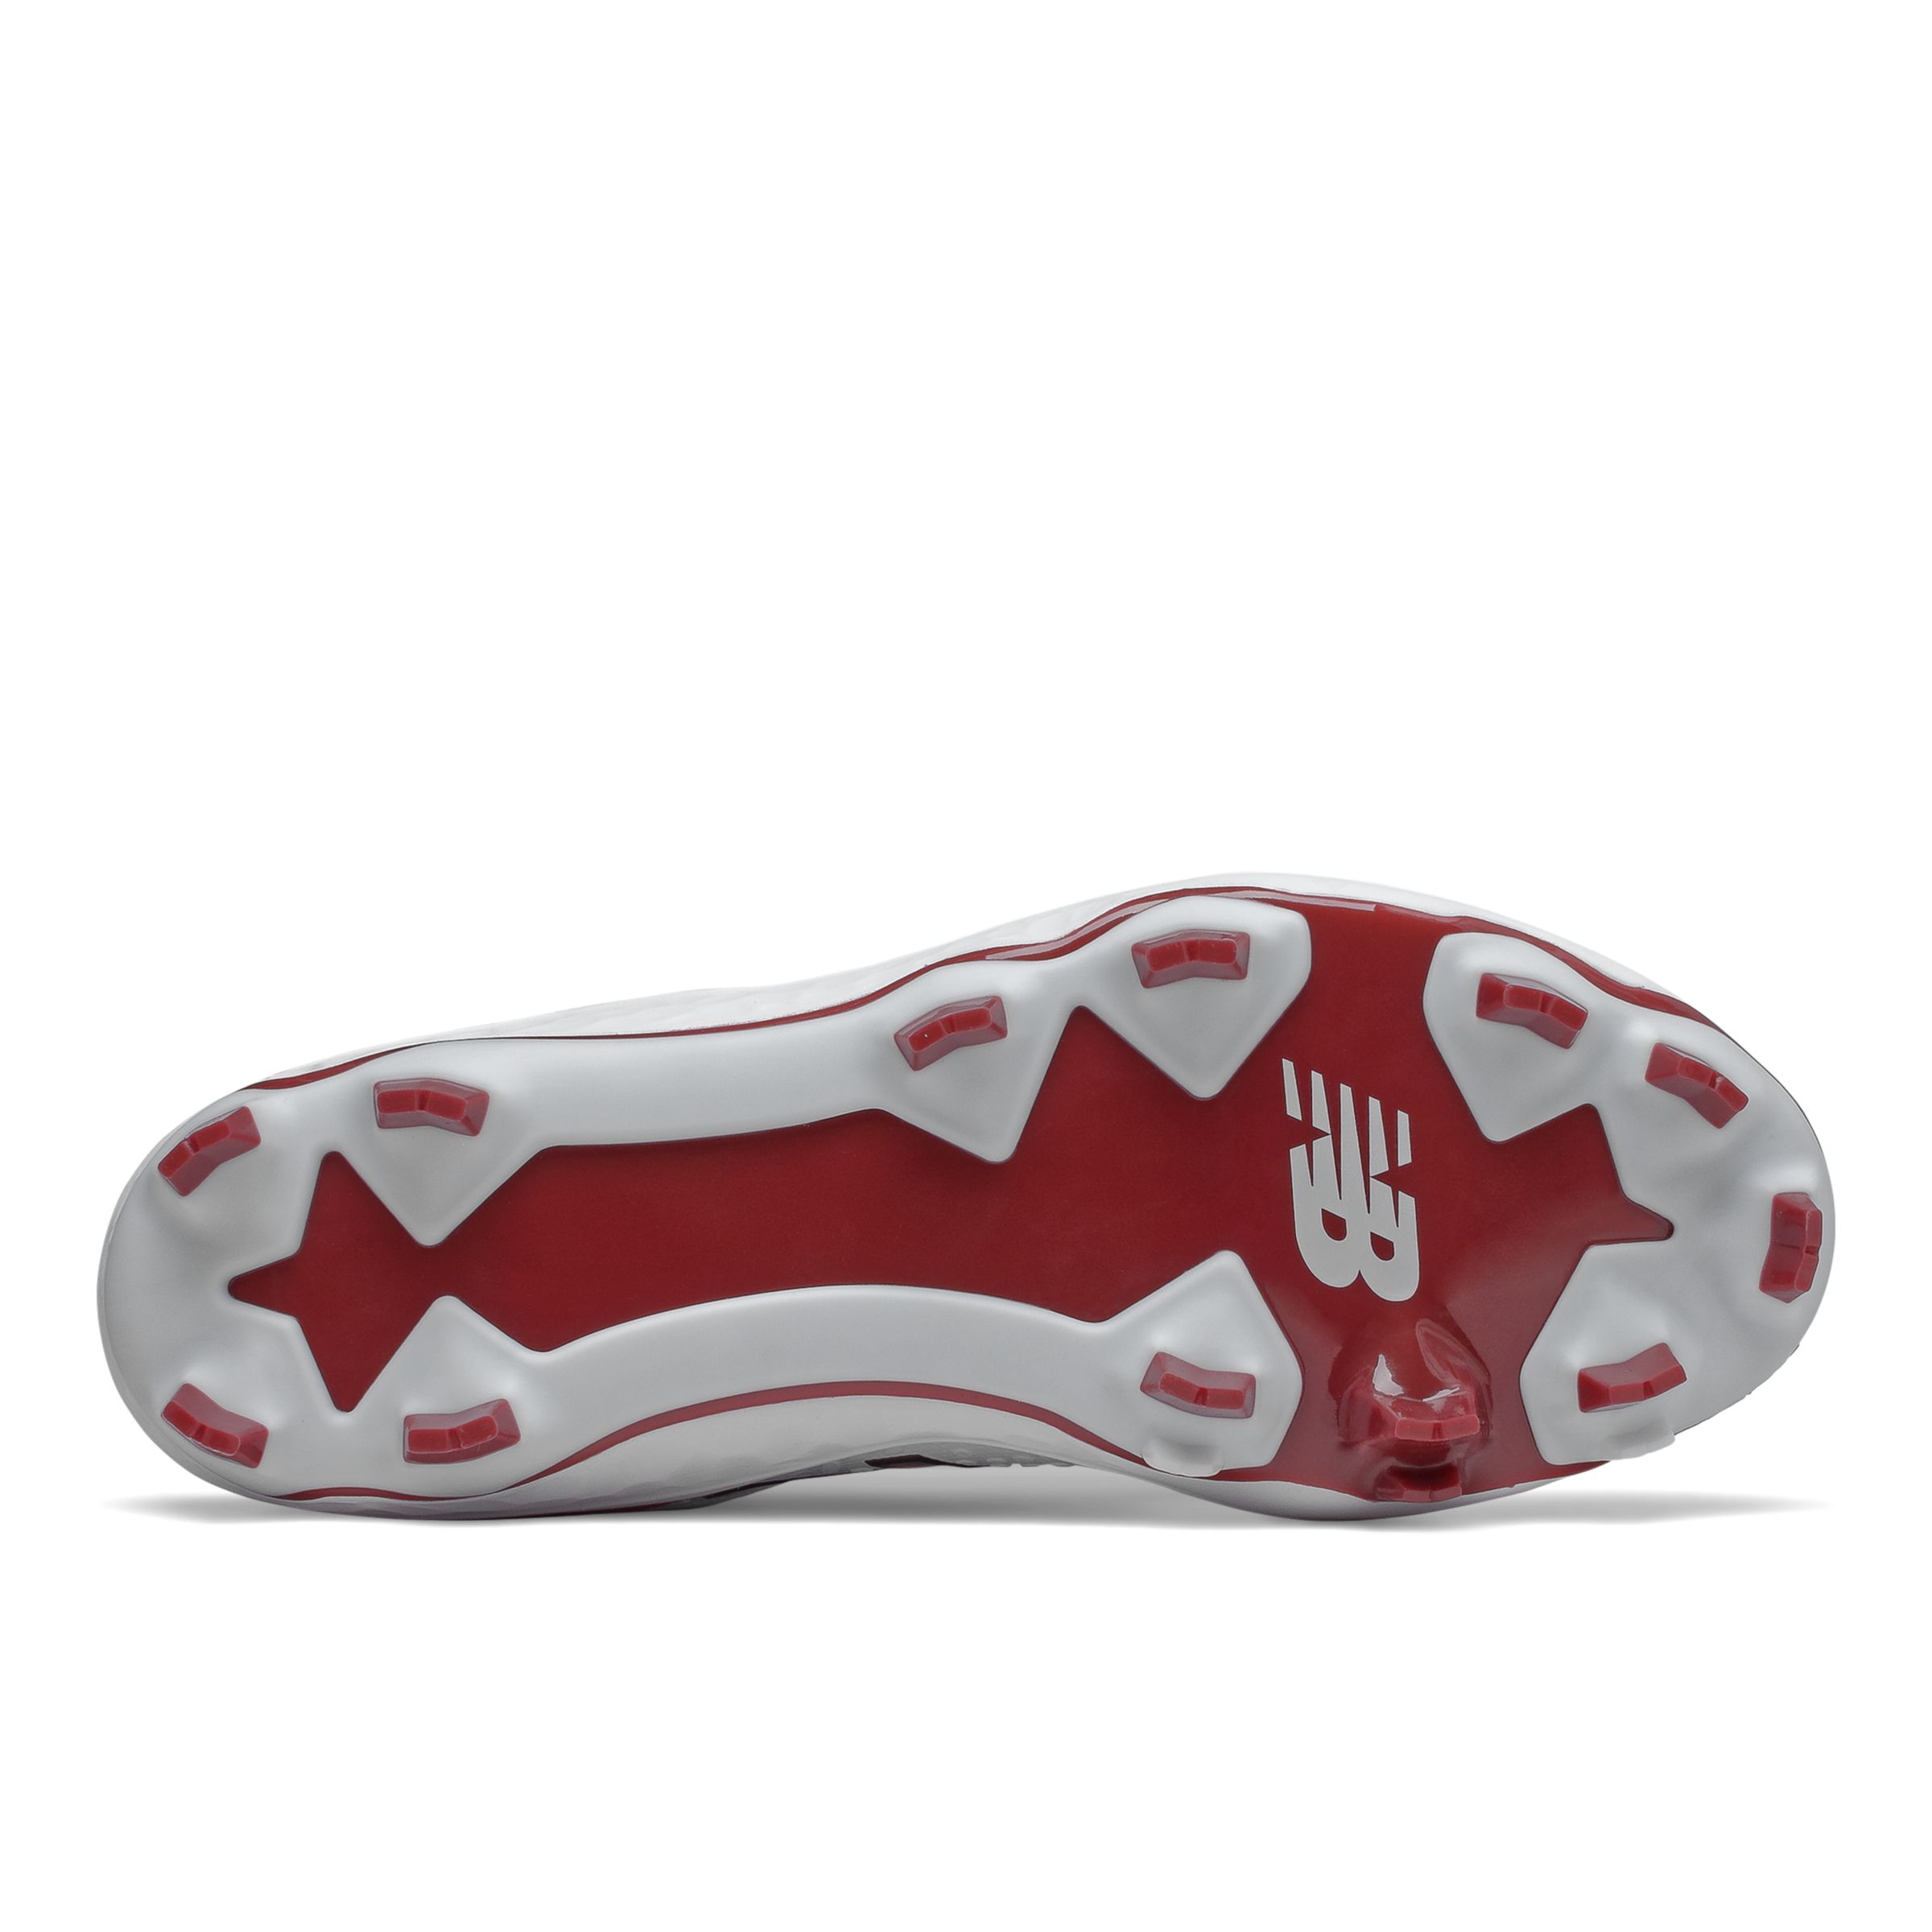  New Balance Unisex-Child 3000 V5 Molded Baseball Shoe | Road  Running